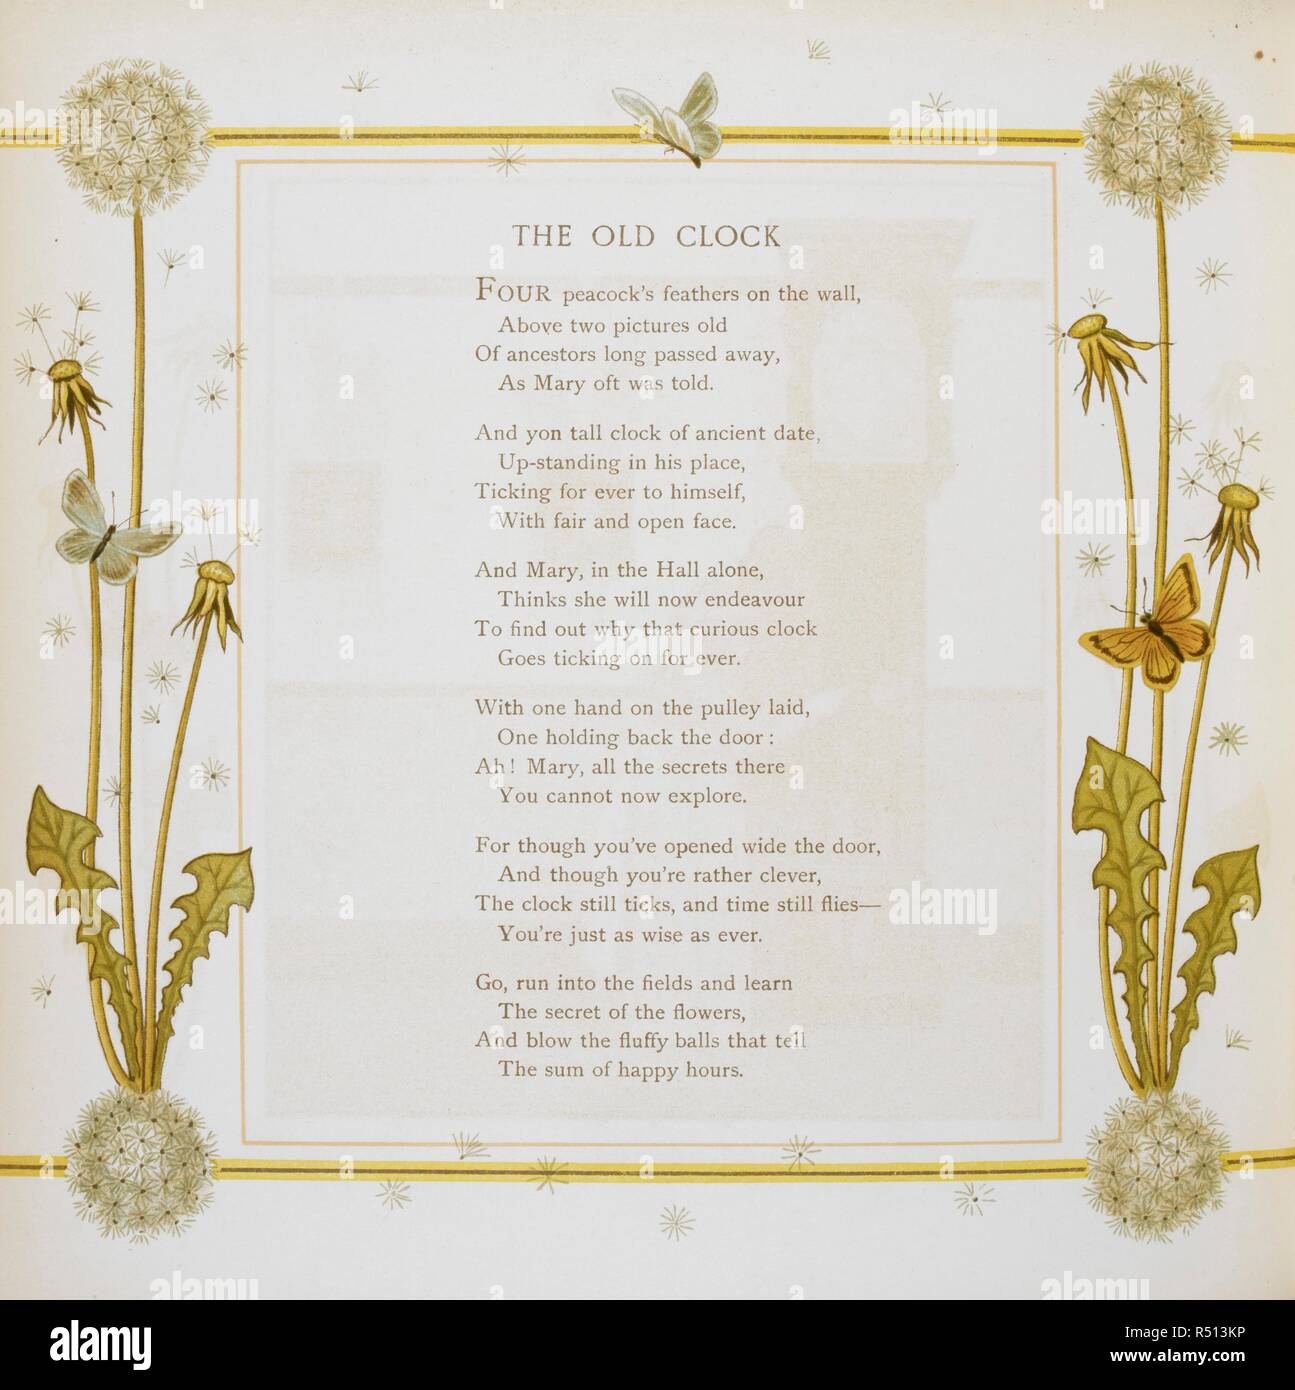 Ein Gedicht mit dem Titel "Die alte Uhr'. Wieder Zuhause. Verse.  [Illustriert] J. G. Sowerby und T. Kran. London: Marcus Ward & Co., [1886].  Quelle: 12806.t.30, Seite 20. Sprache: Englisch. Autor: Sowerby,